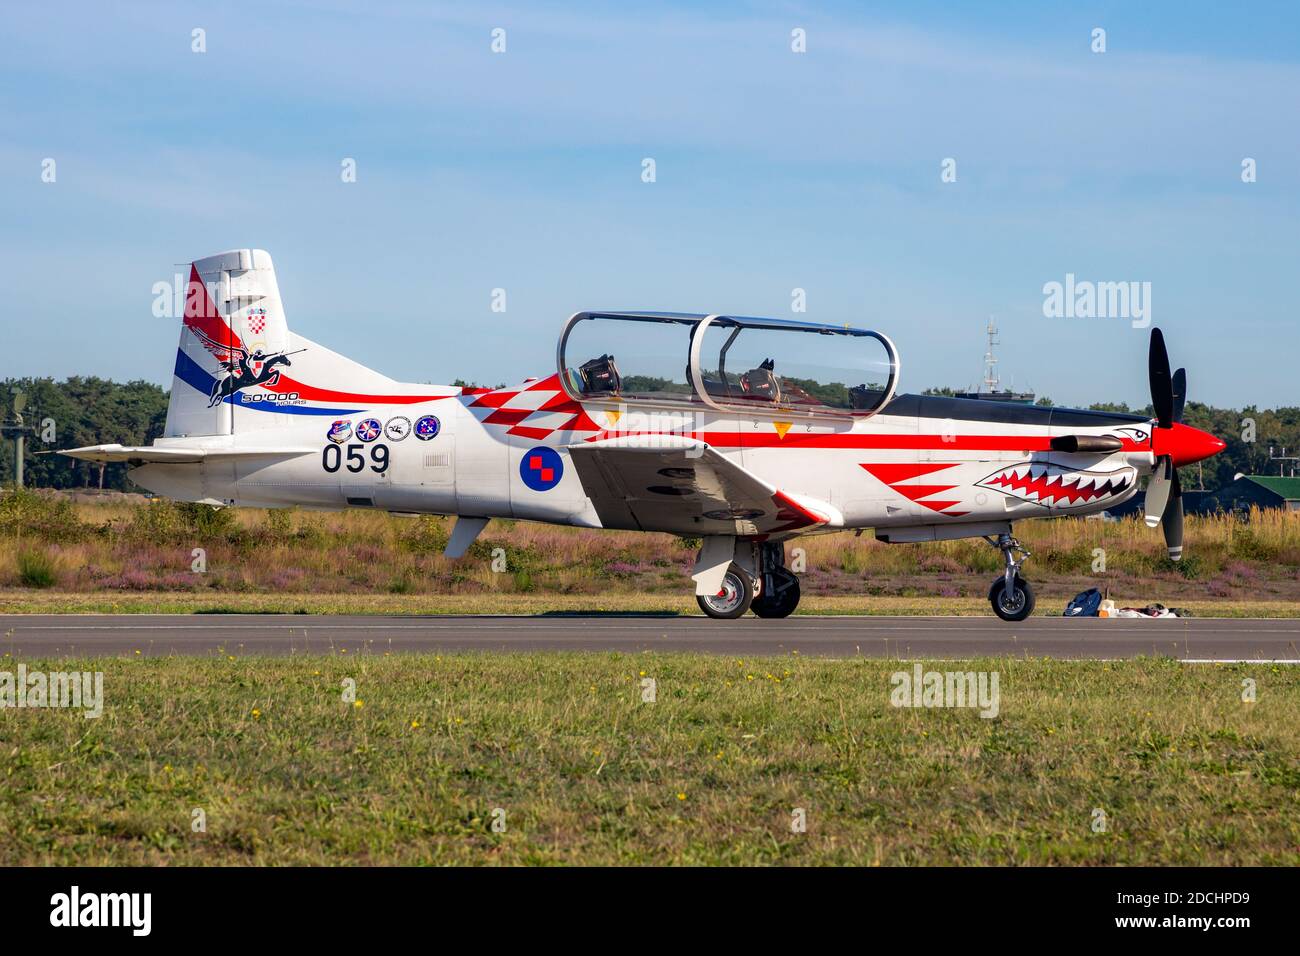 Croate Air Force Pilatus PC-9 entraînement en train de rouler en avion à la base aérienne de Kleine-Brogel. Belgique - 14 septembre 2019 Banque D'Images